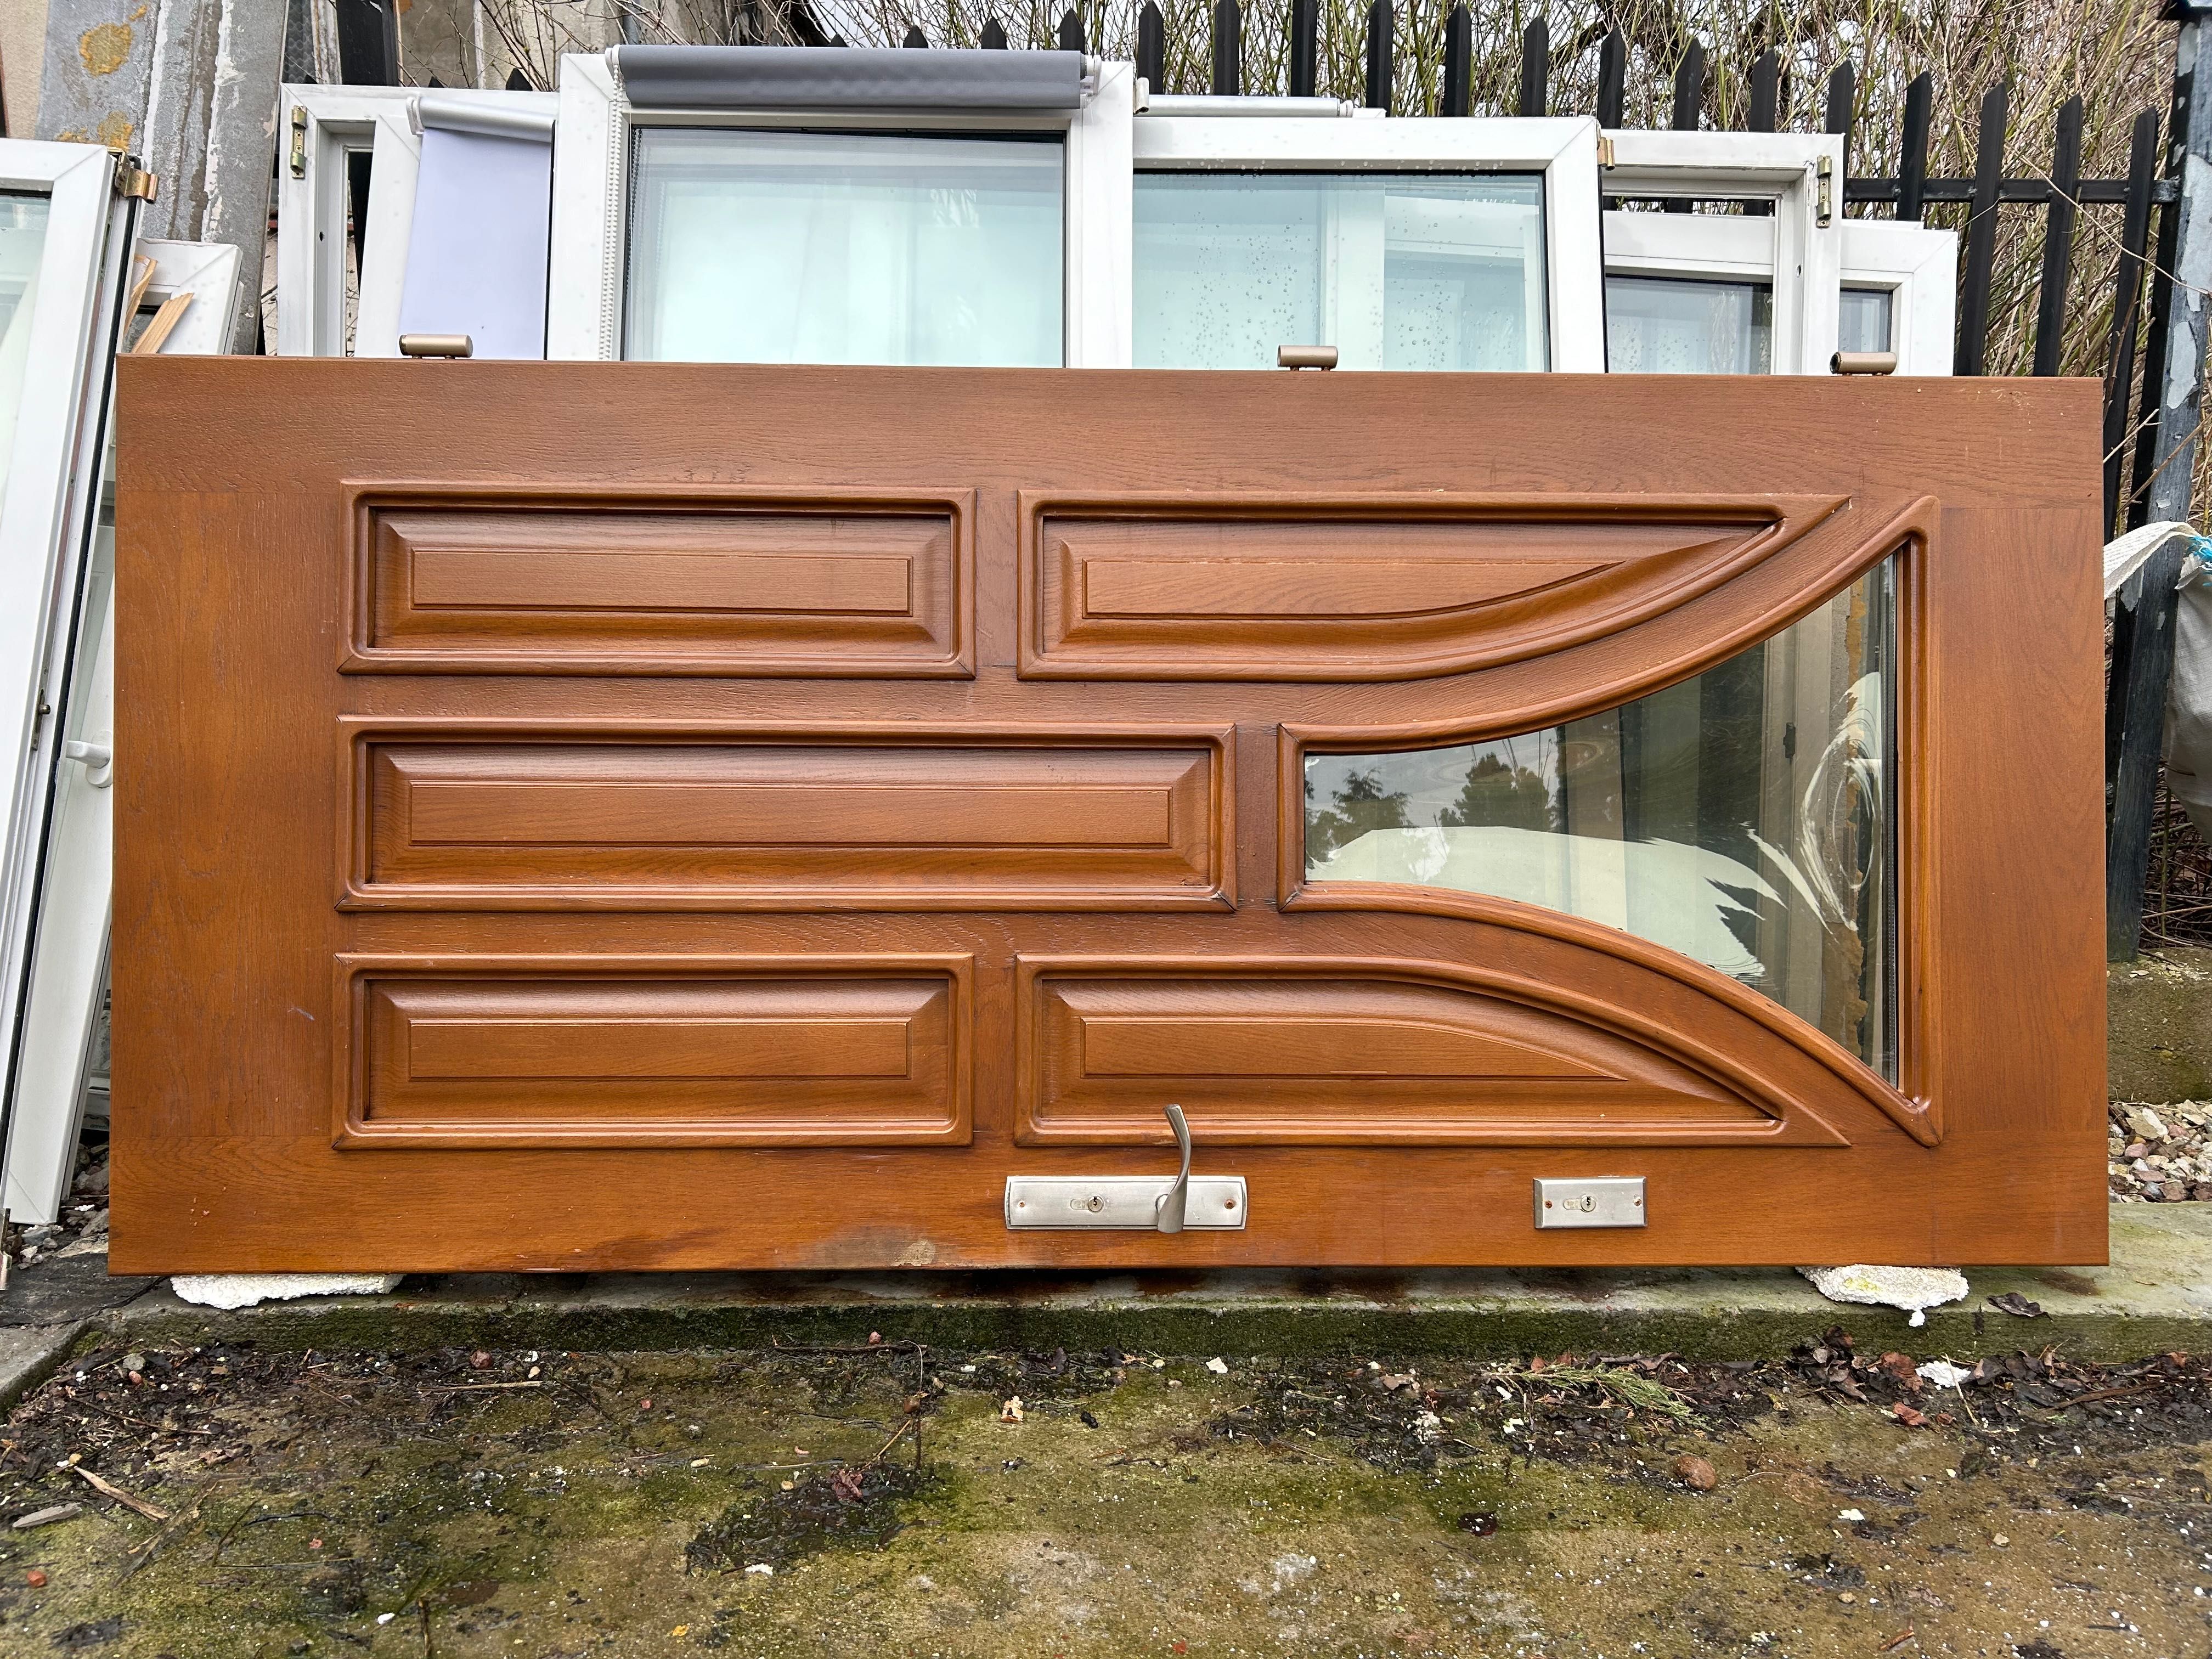 Sprzedam drzwi drewniane dębowe w kolorze brązowym 200 x 90 cm